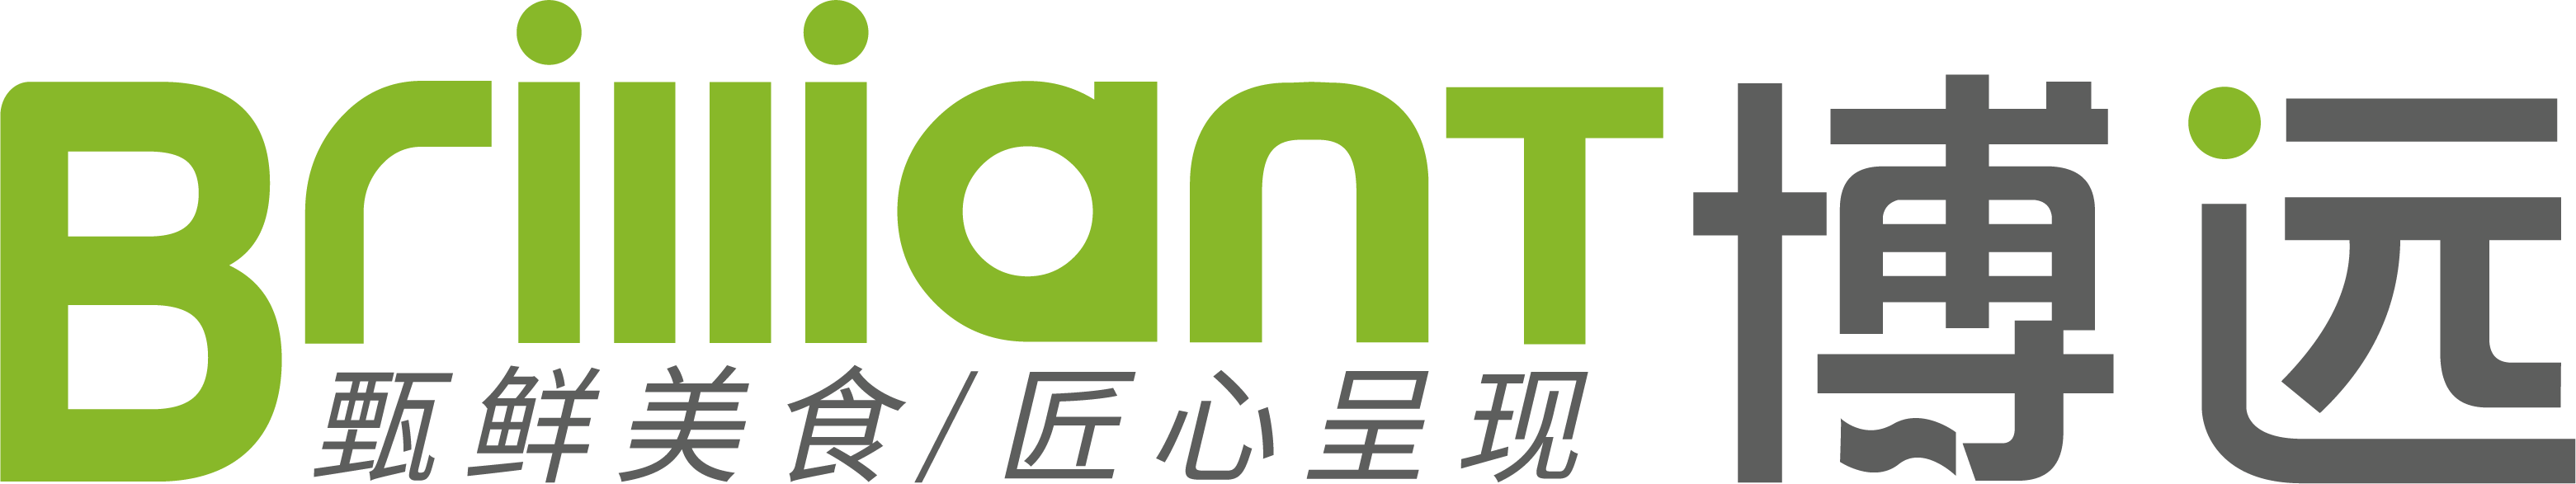 博远logo【透明】.png